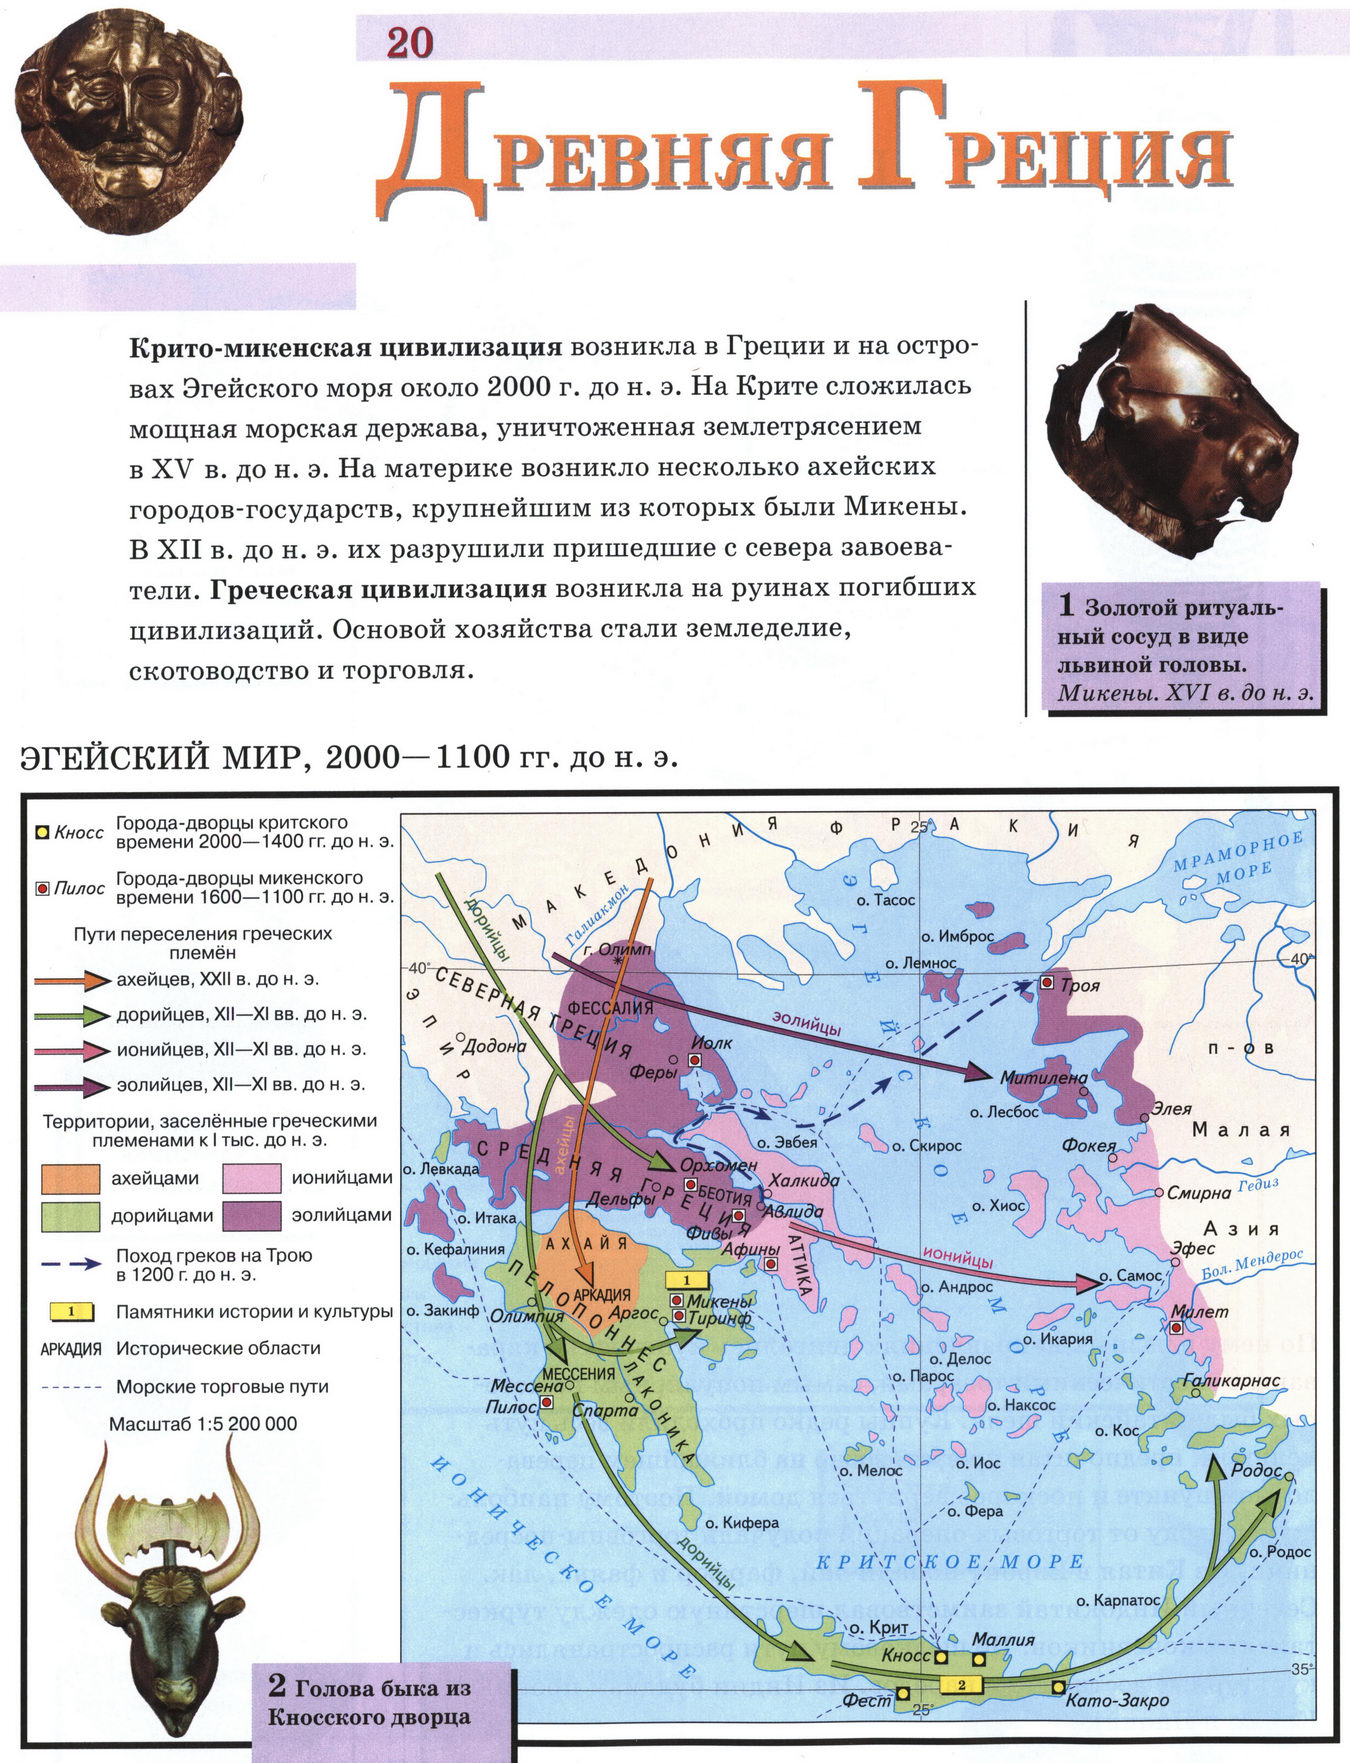 Древняя Греция - карта атласа по истории Древнего мира